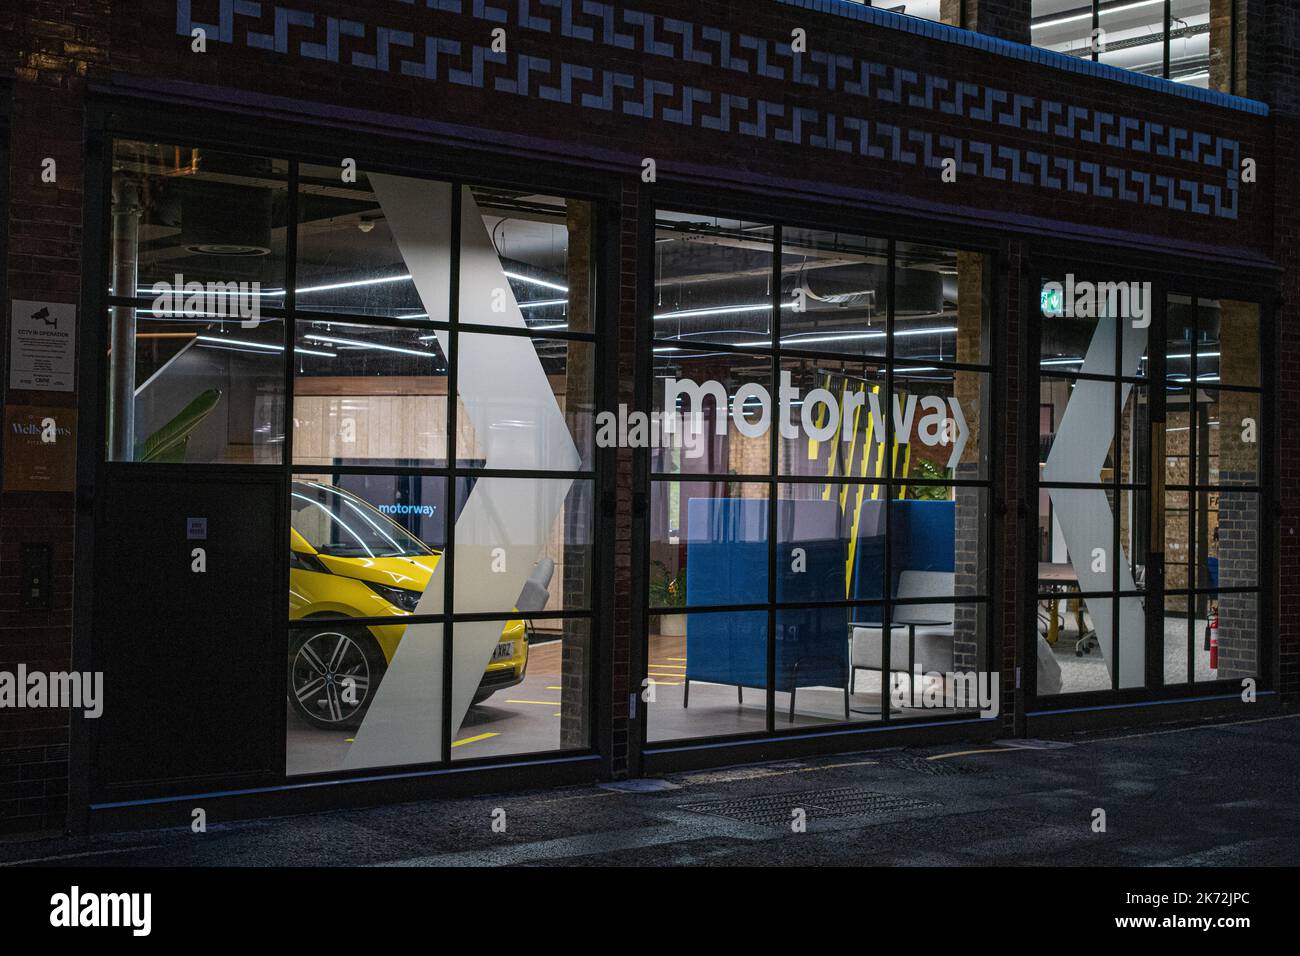 Autobahnen Online Car Marketplace Büros In London. Die Motorway Ltd ist ein ausschließlich online genutzter Gebrauchtwagenmarkt mit Sitz im Vereinigten Königreich. Die Autobahn wurde 2017 gegründet. Stockfoto